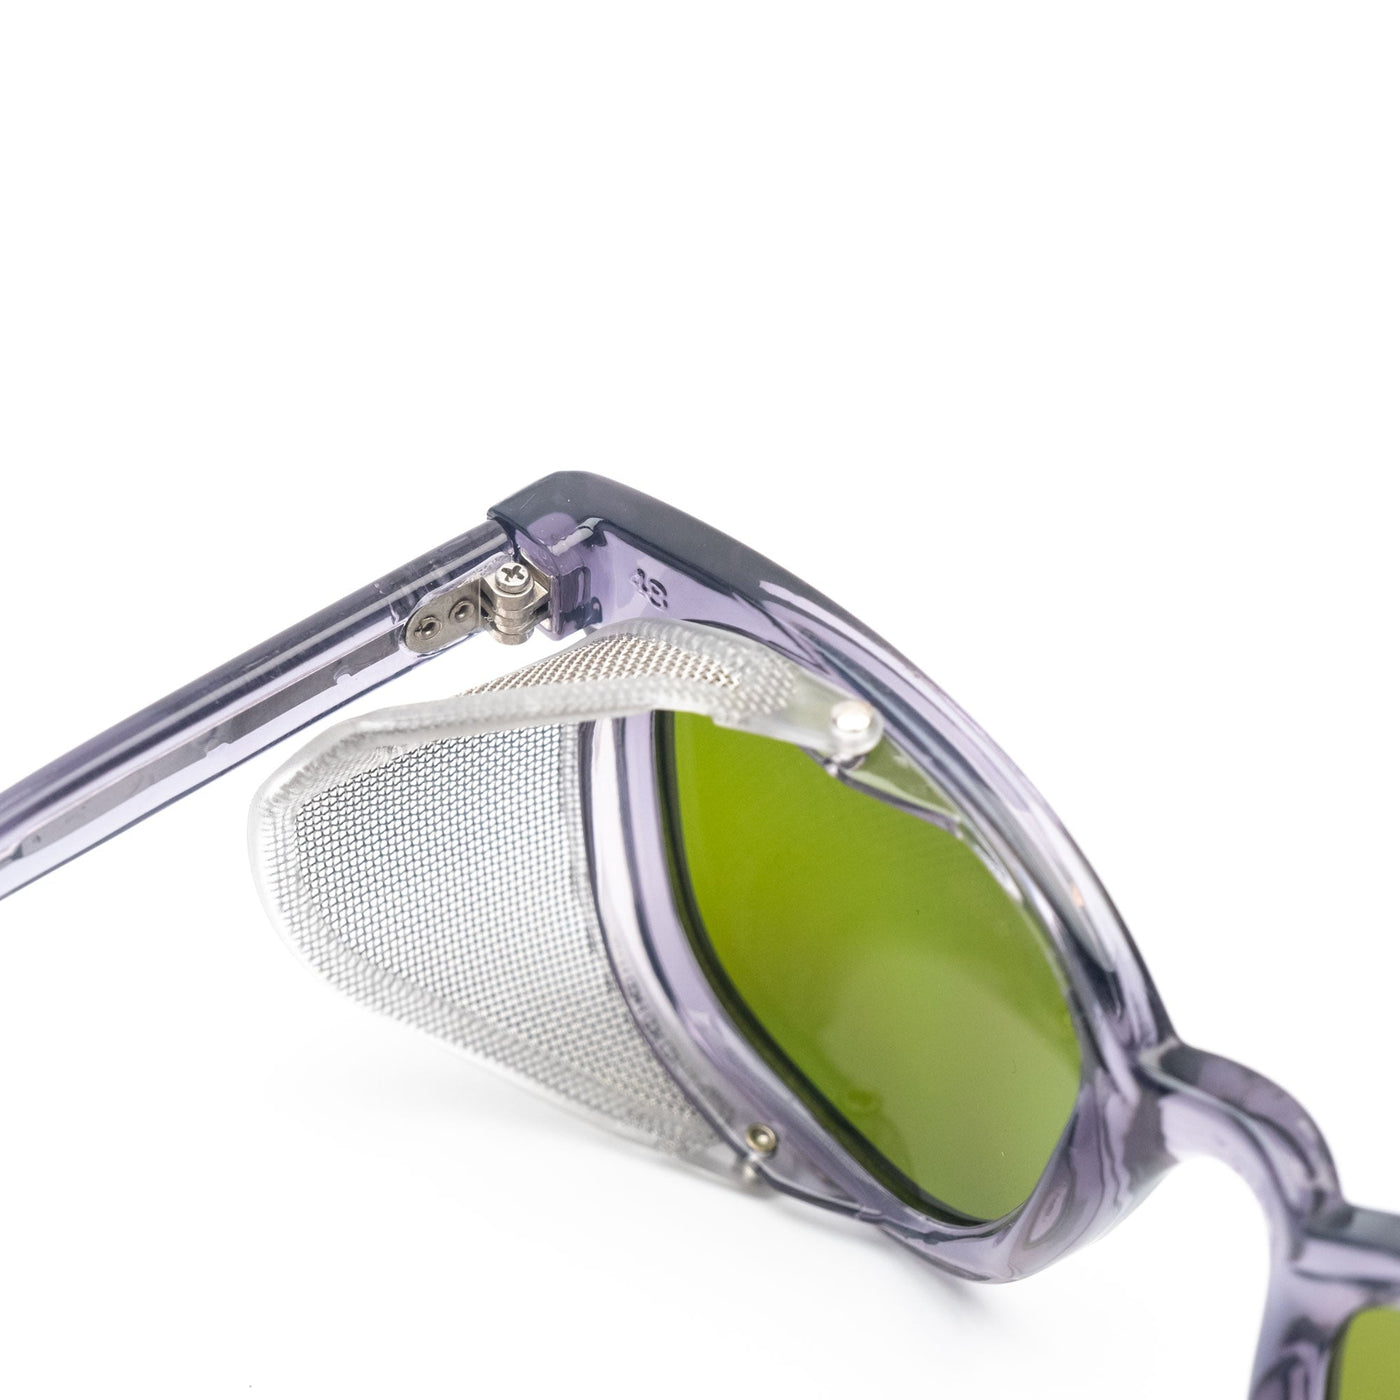 Vintage Safety Glasses - Green Lens - Prism Supply